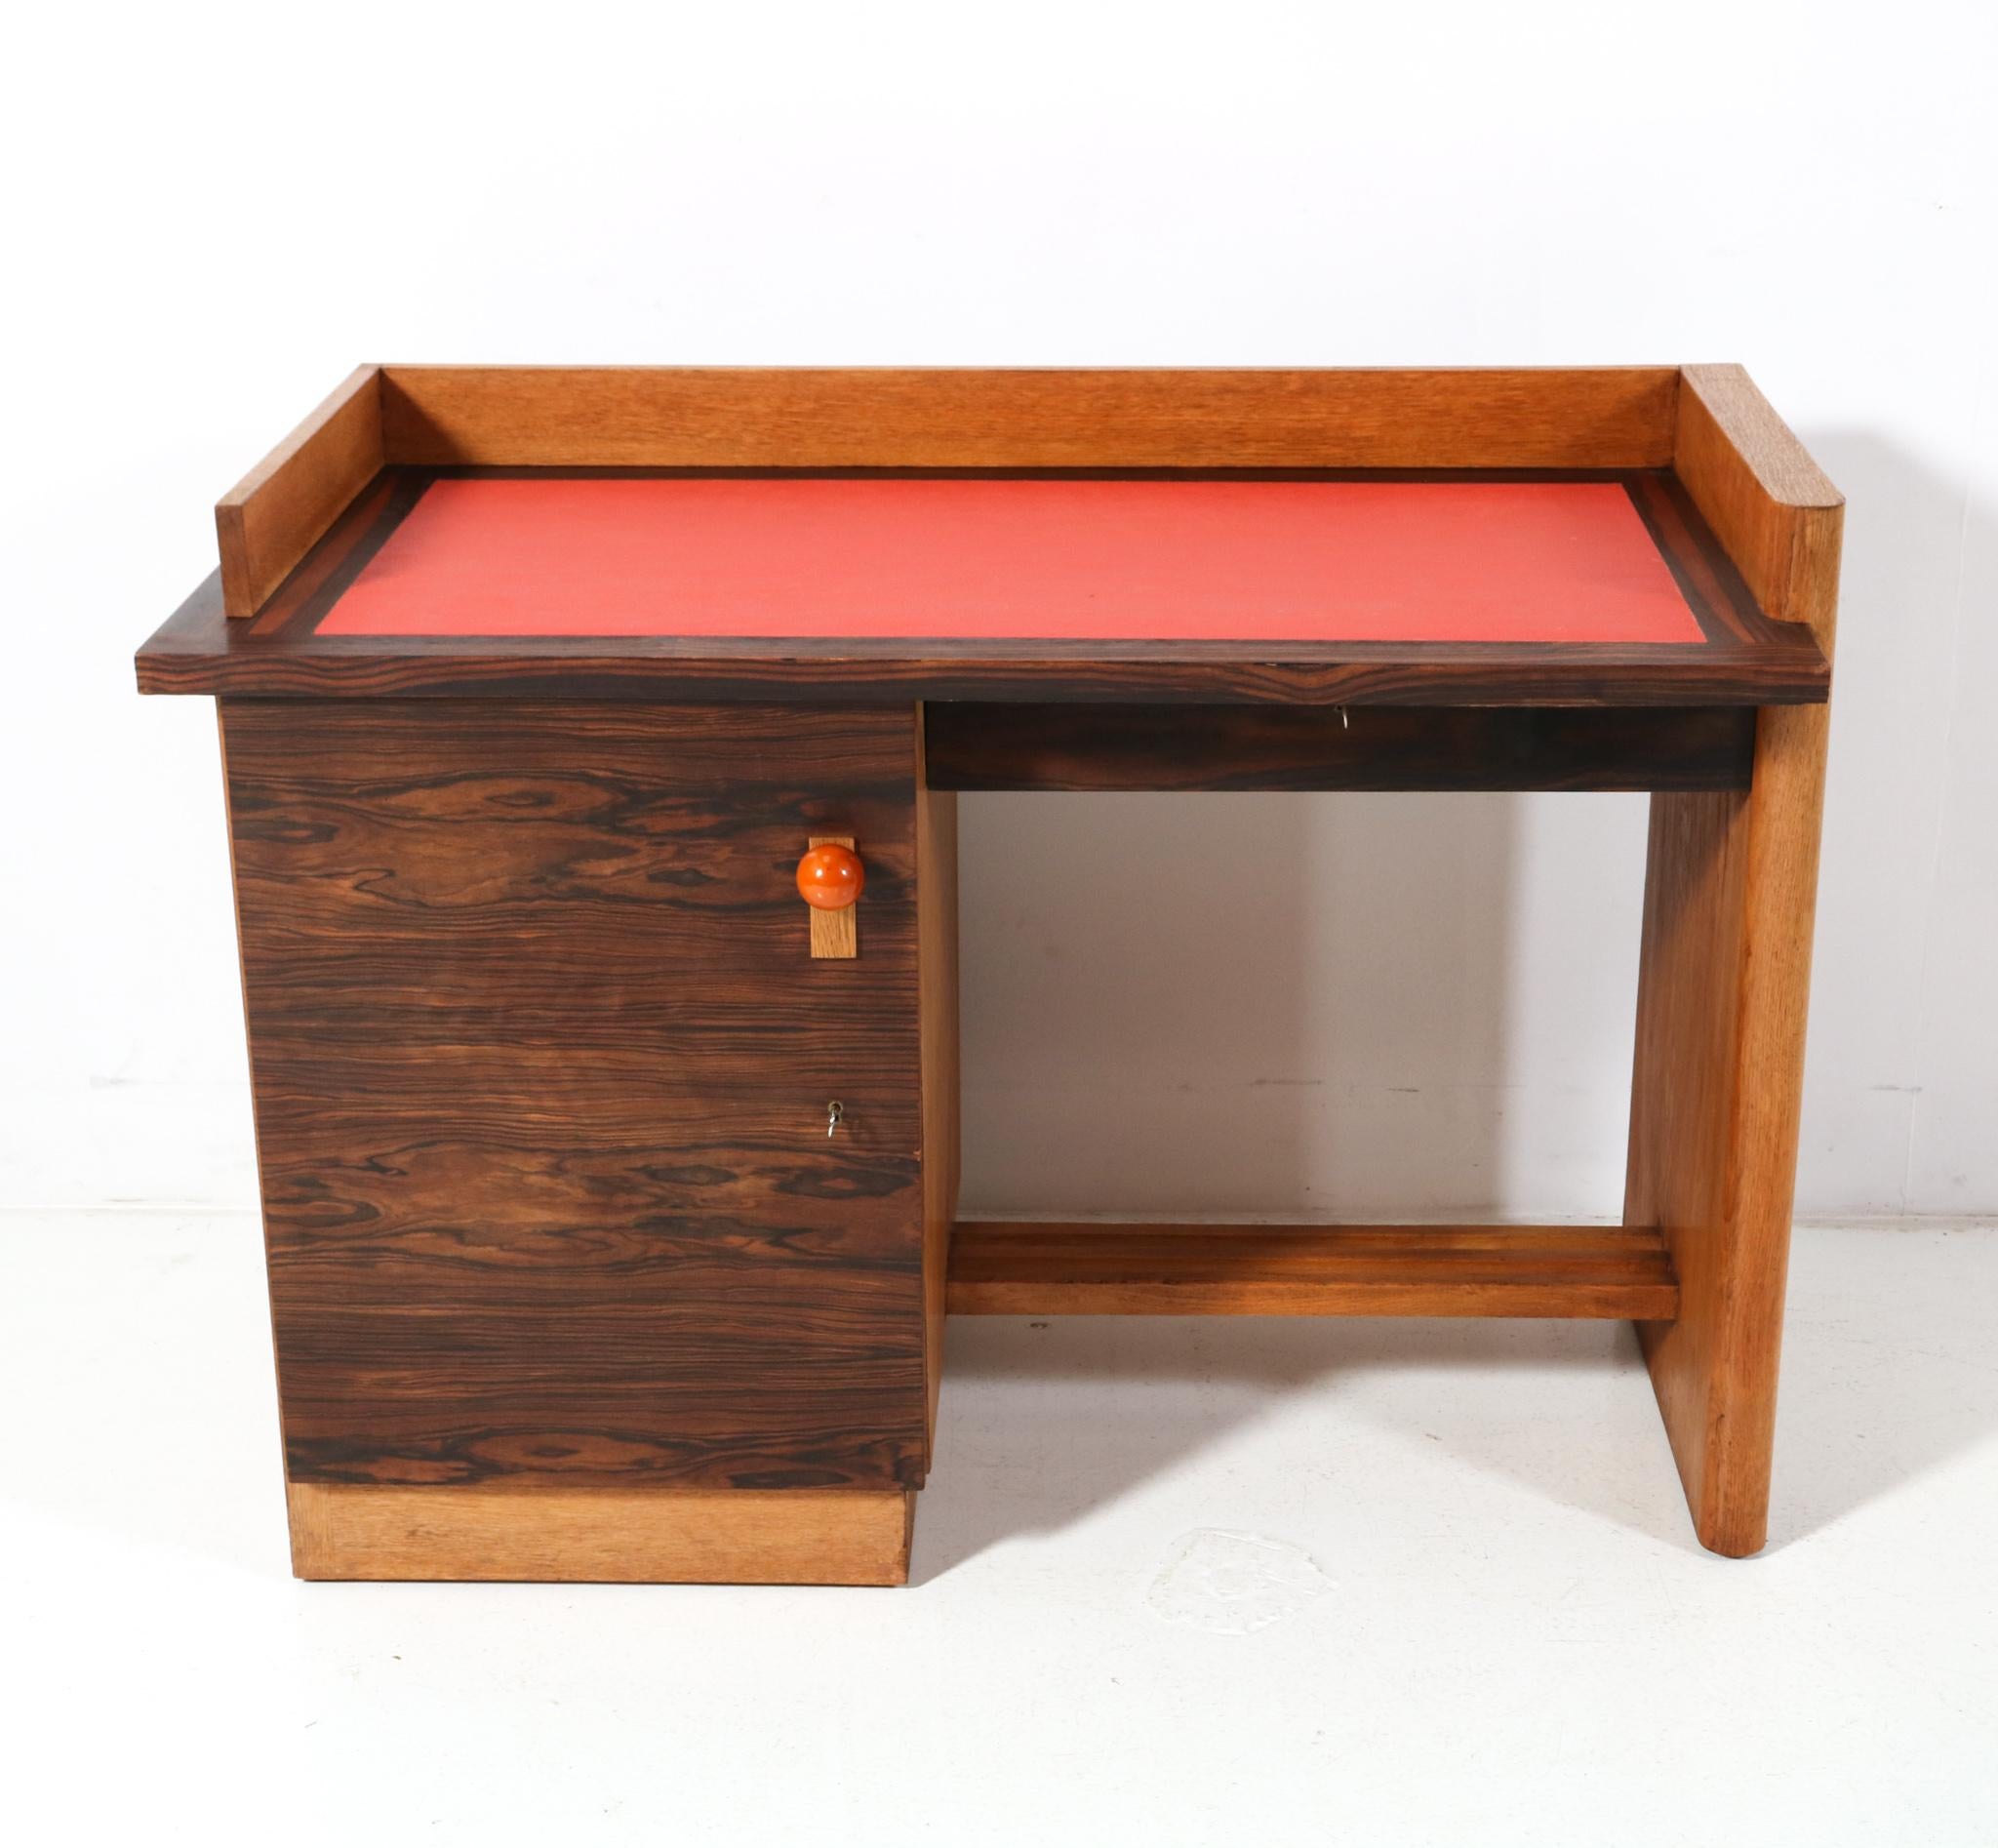 Modernistischer Art-Déco-Schreibtisch aus Eiche von Jan Brunott, 1920er Jahre (Kunstleder)